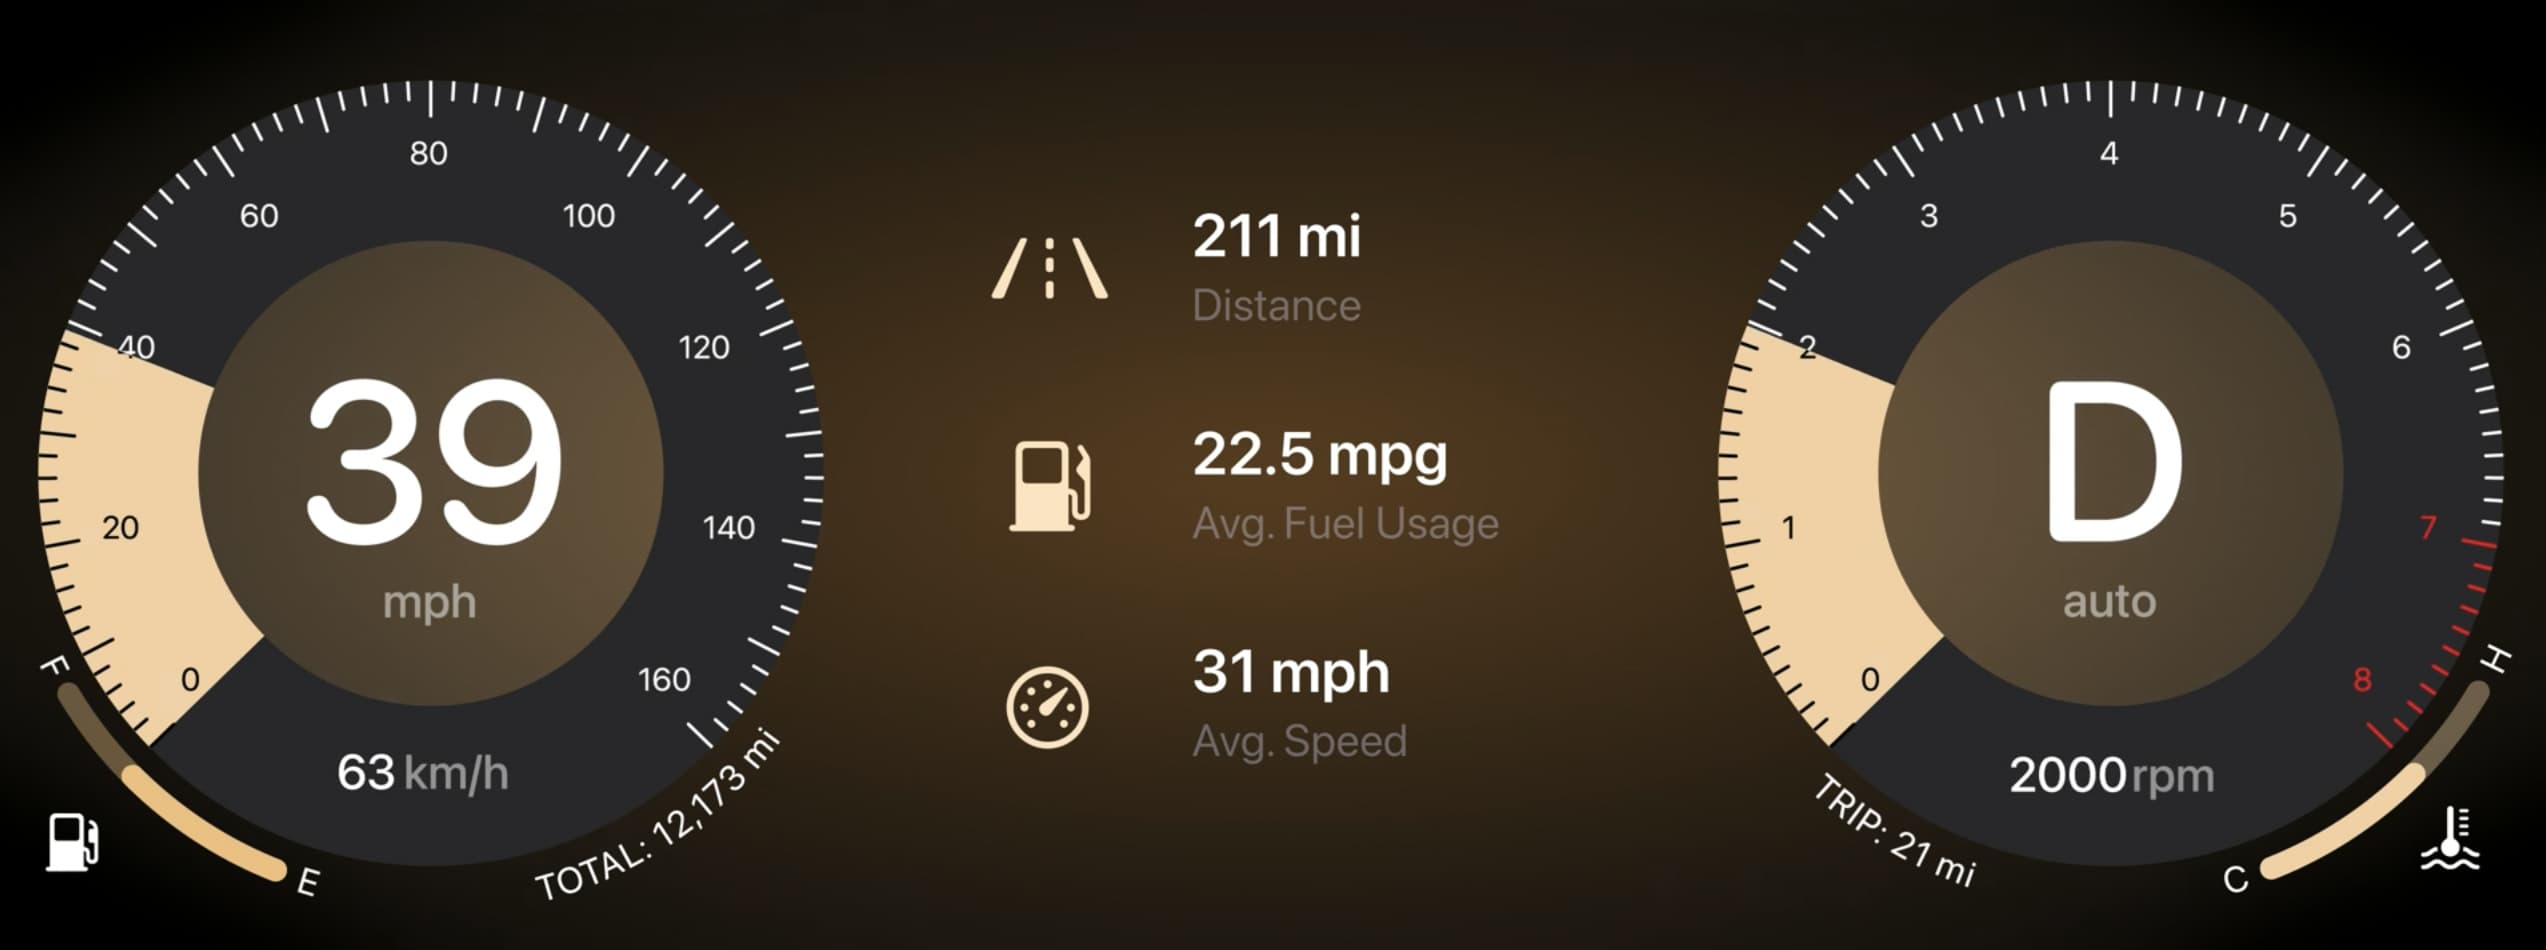 新一代CarPlay儀表板資訊